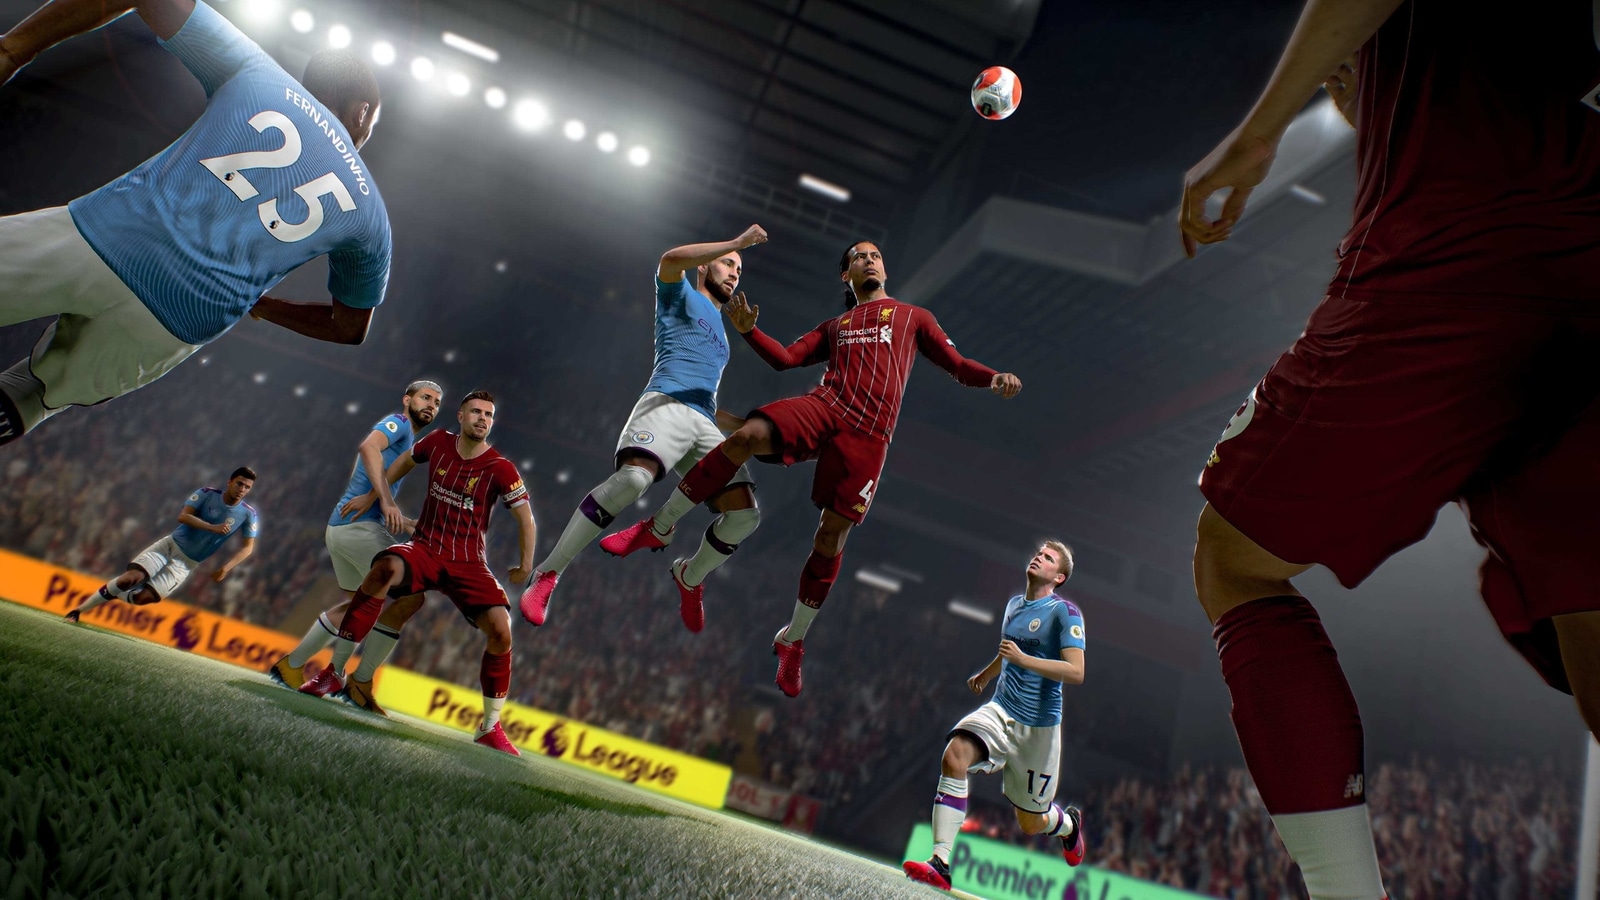  FIFA 22 - Xbox One : Electronic Arts: Everything Else